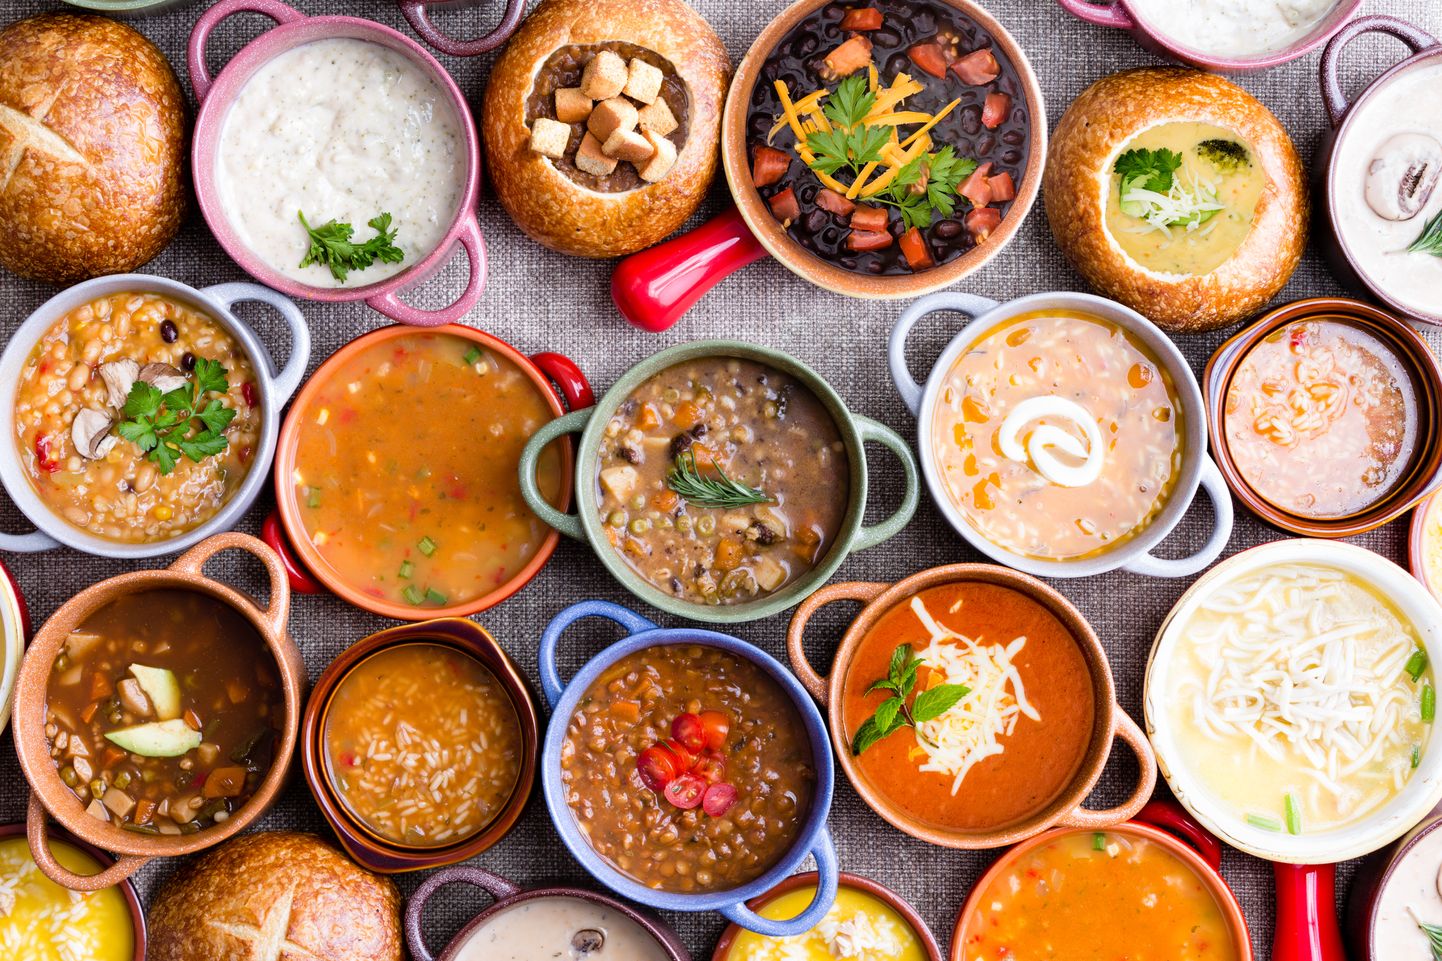 Idast, läänest ja lõunast on meie lauale jõudnud terve hulk suurepäraseid suppe, mida saab kindlasti vaid tervitada.